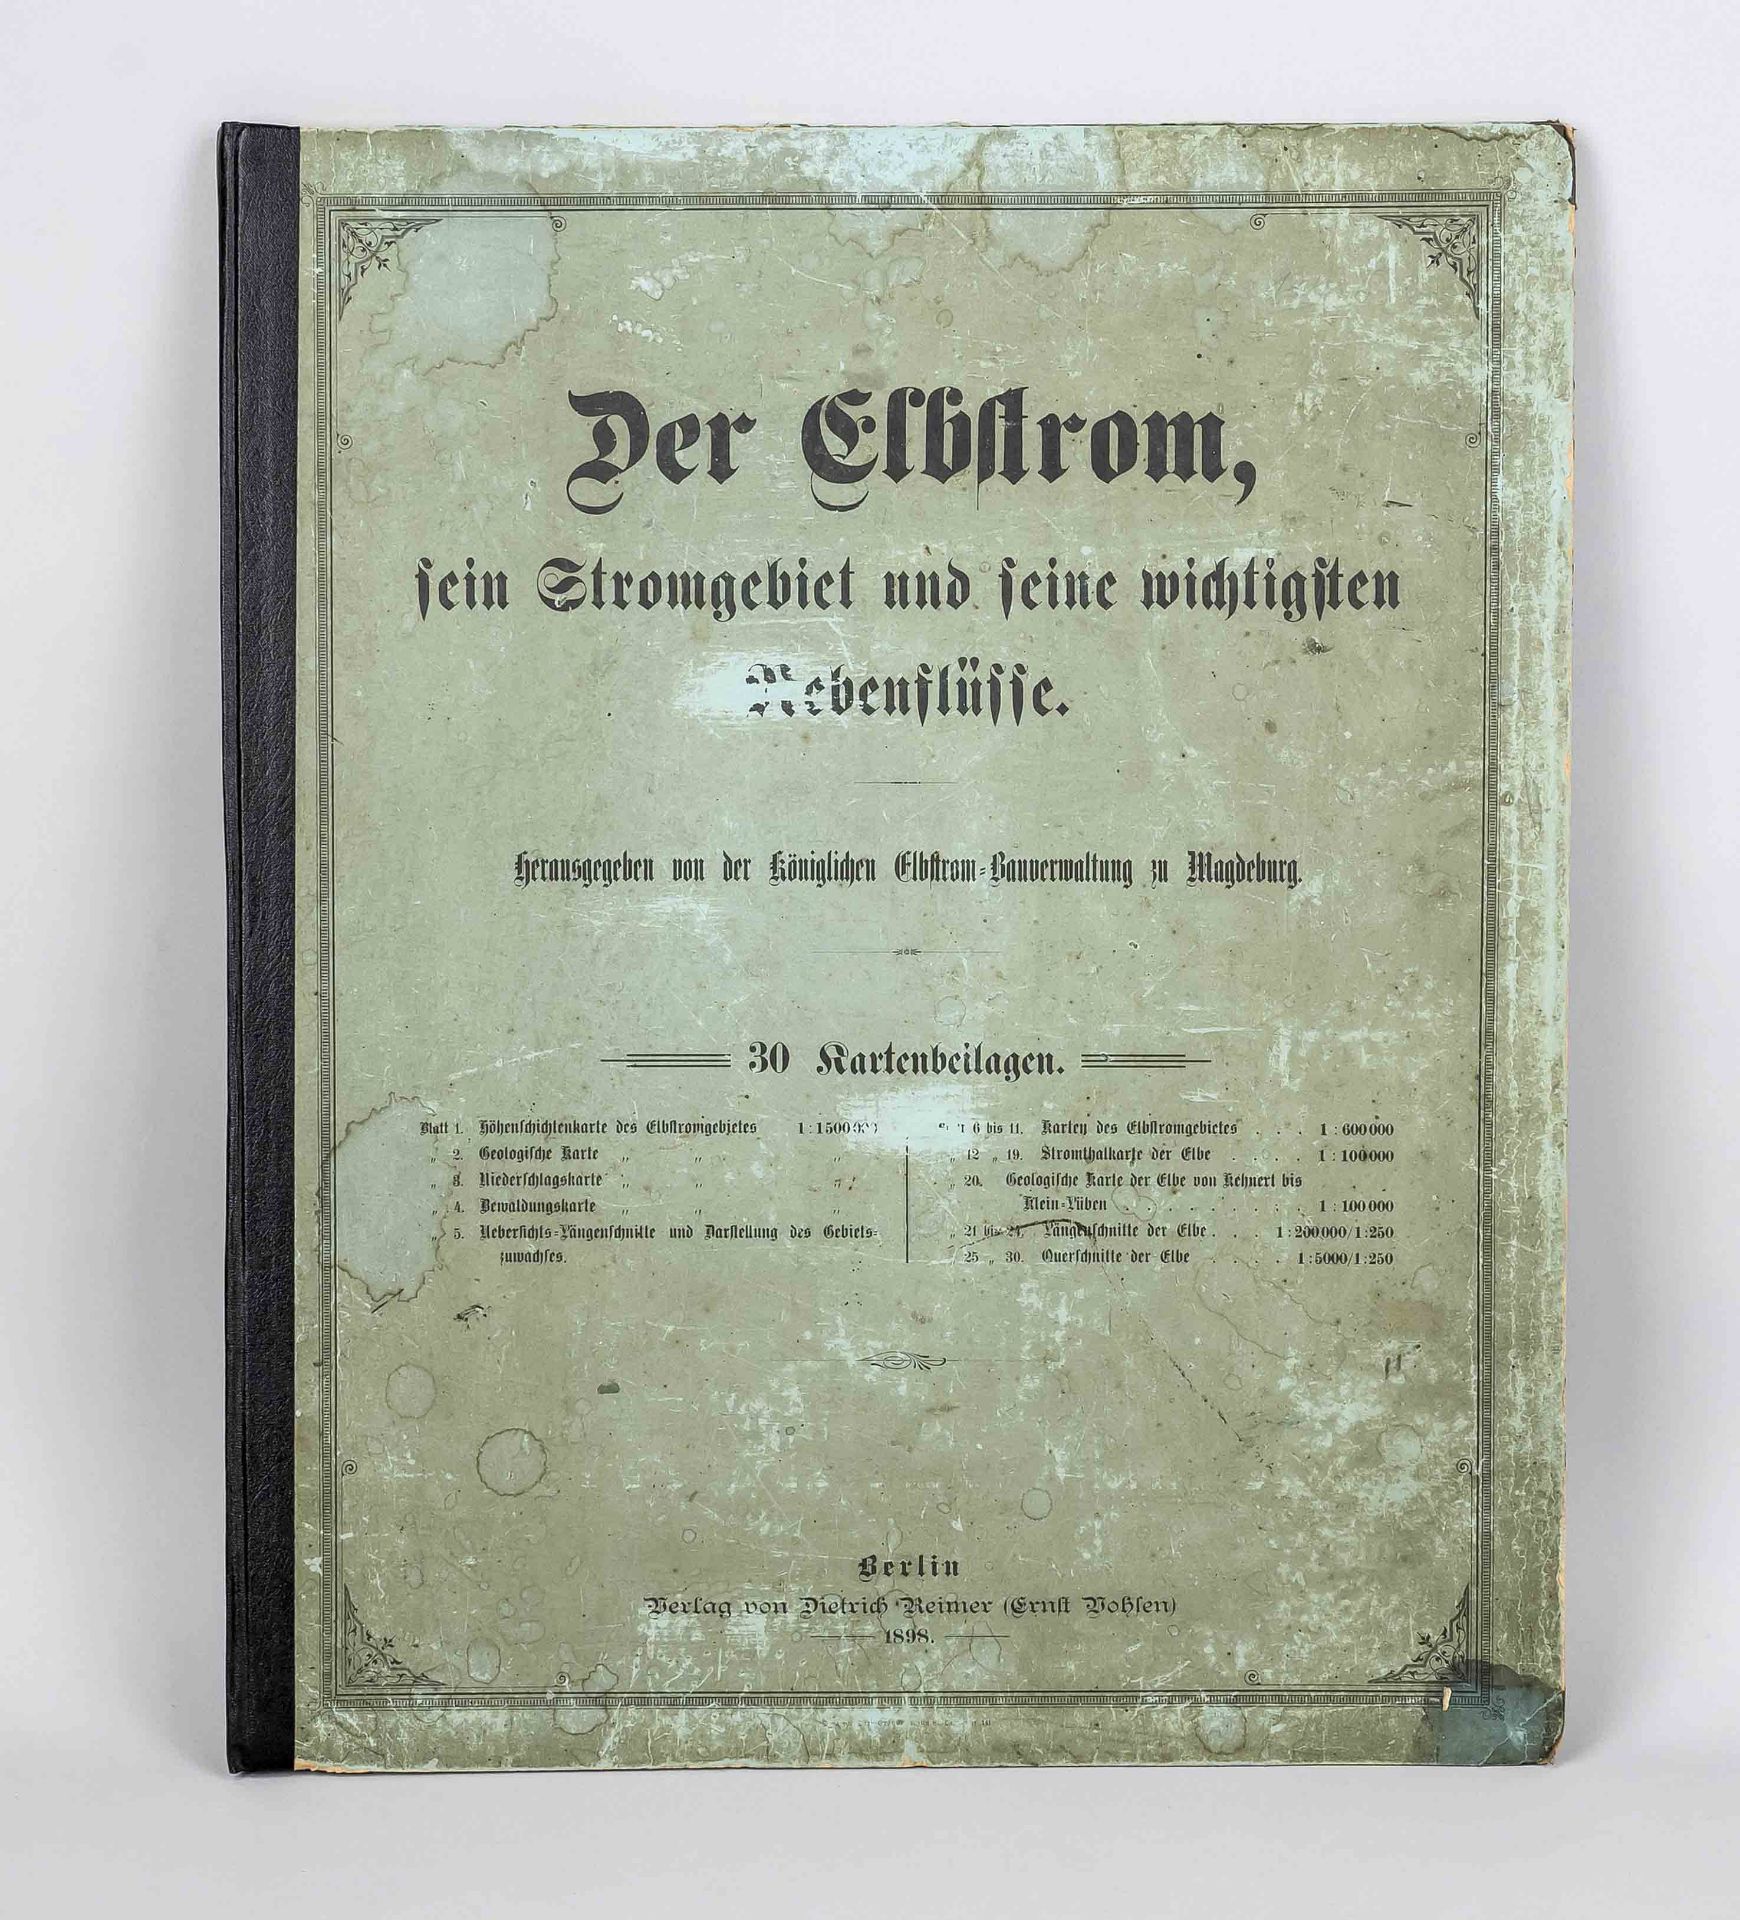 ''Der Elbstrom und seine wichtigsten Nebenflüsse'', Berlin 1898 (Reimer), ed. by the royal